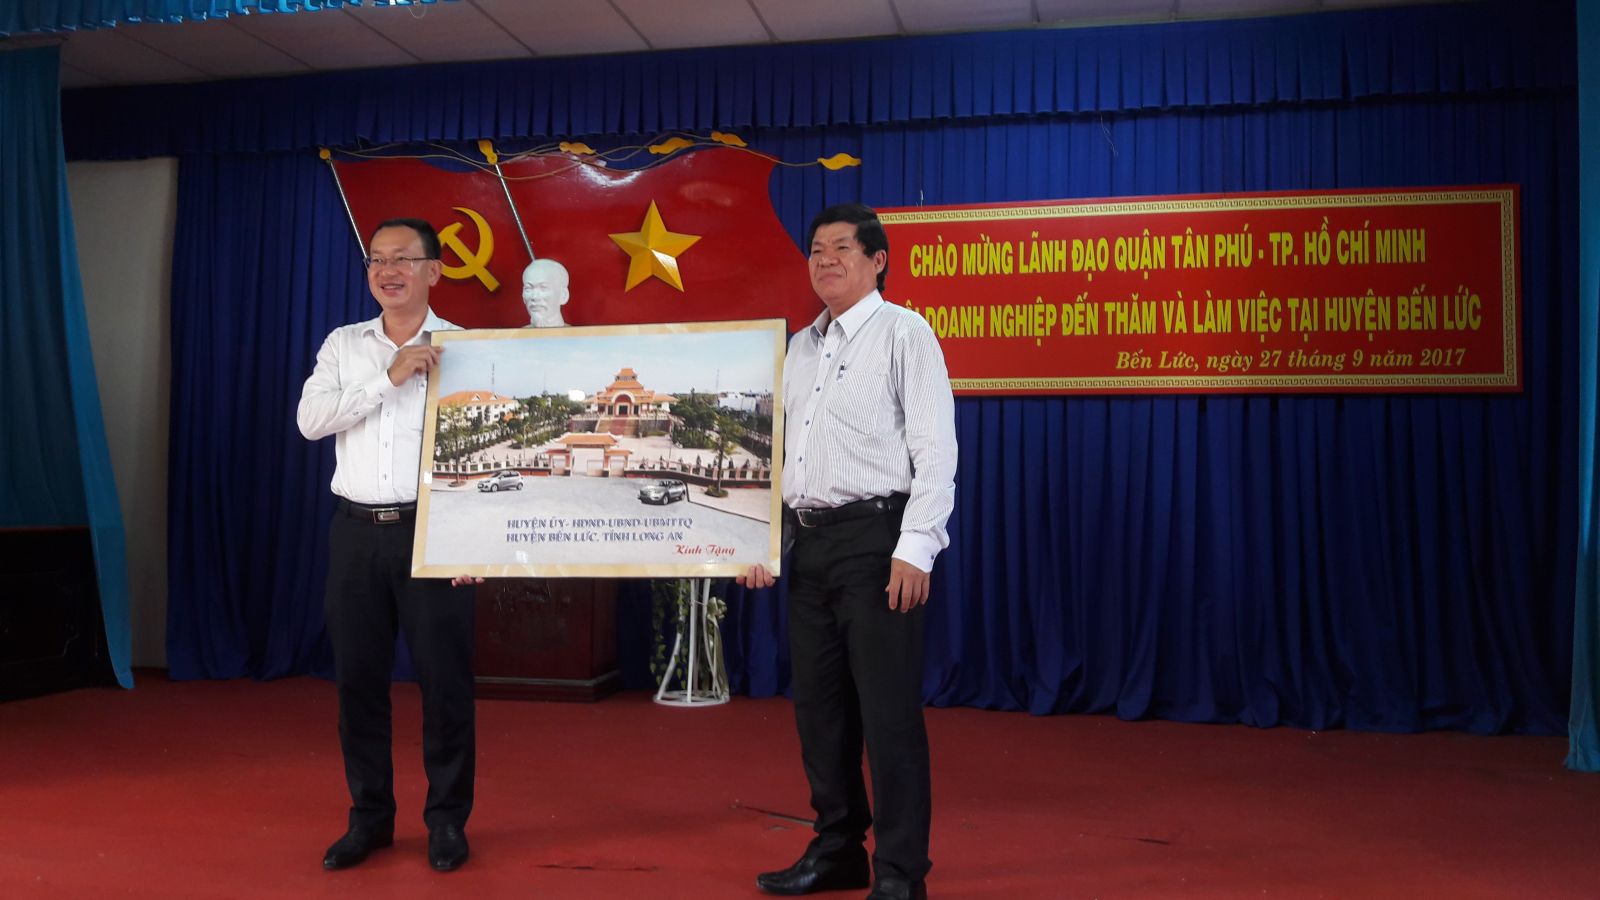 Chi hội DNT Bến Lức giao lưu hiệp hội doanh nghiệp quận Tân Phú - TPHCM